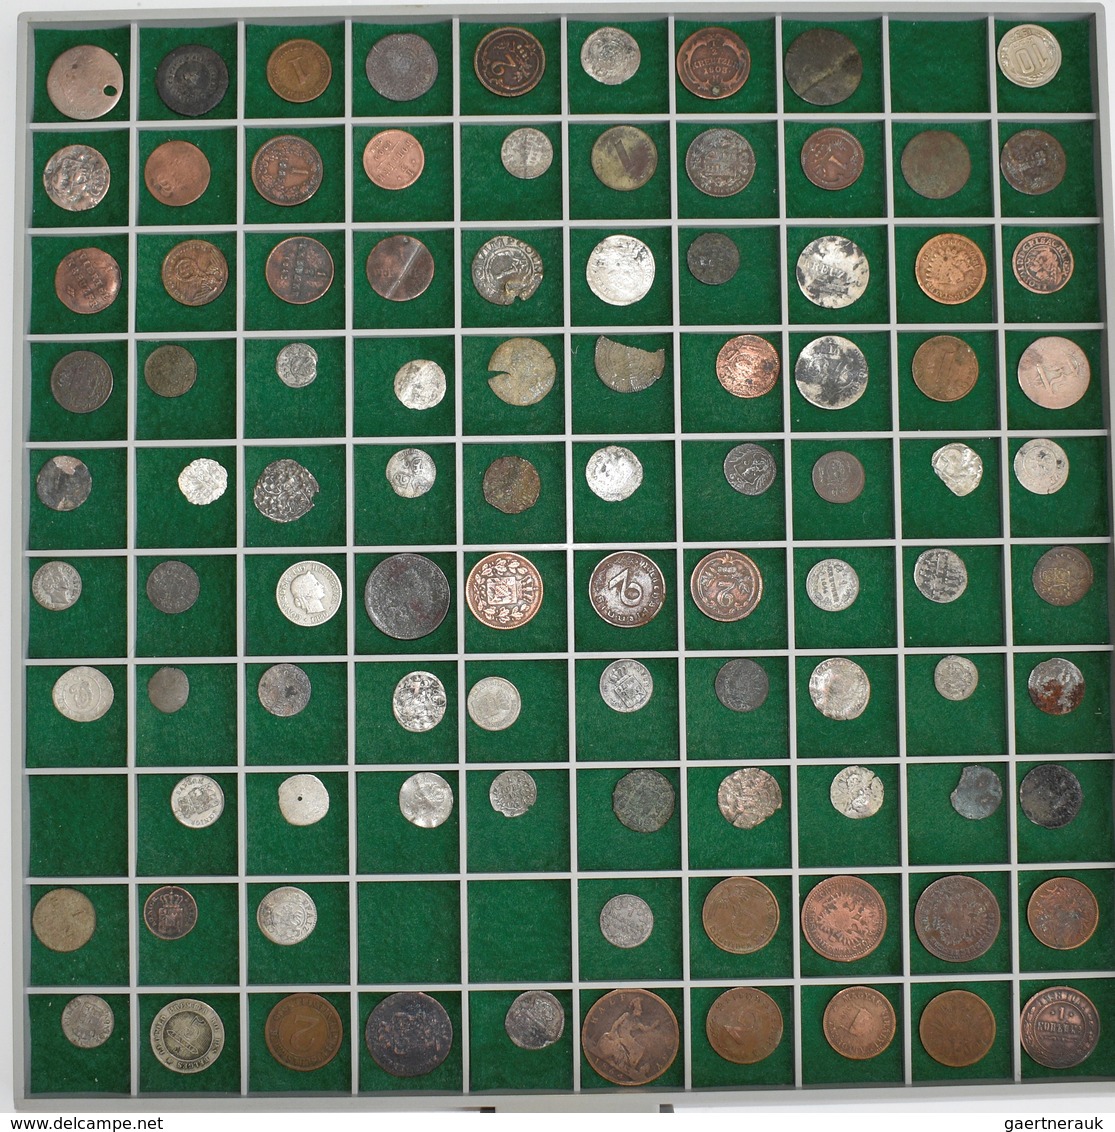 Europa: Eine Sammlung von 440 Münzen/Medaillen; den Schwerpunkt bilden Kleinmünzen altdeutscher Staa